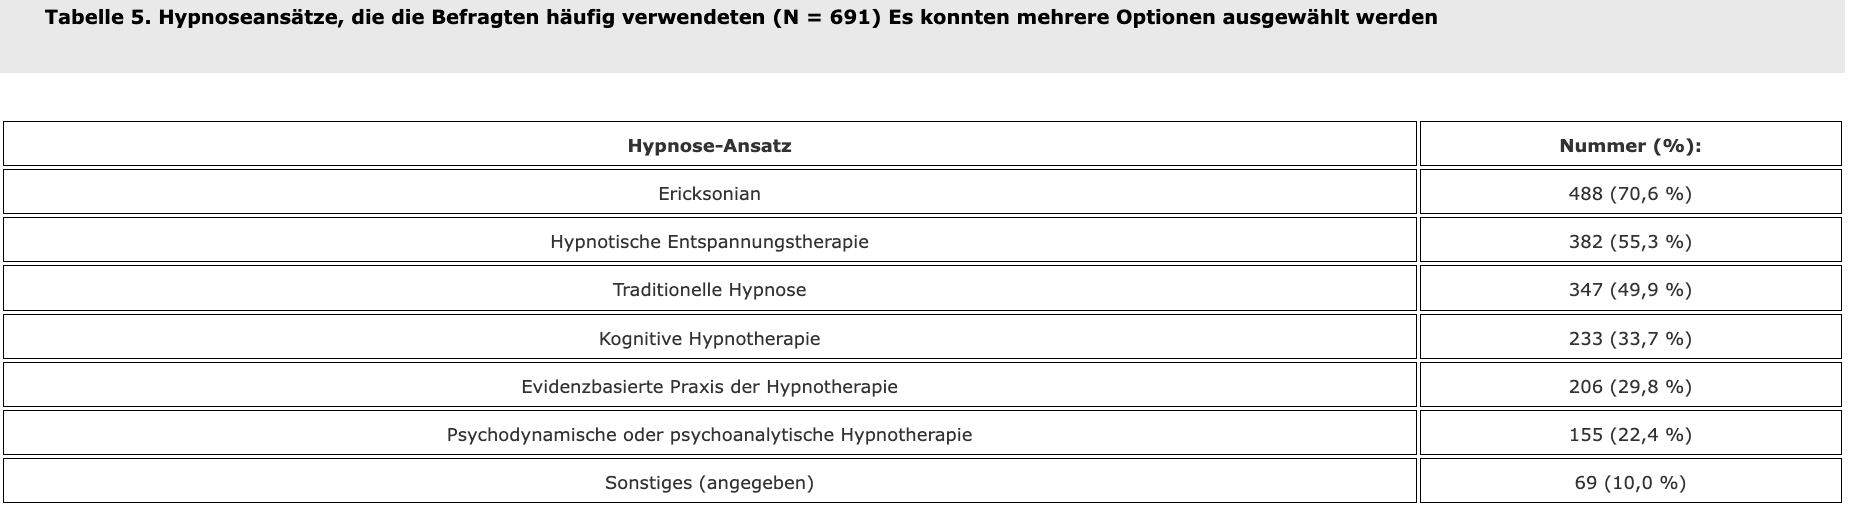 Tabelle 5. Hypnoseansätze, die die Befragten häufig verwendeten (N = 691) Es konnten mehrere Optionen ausgewählt werden